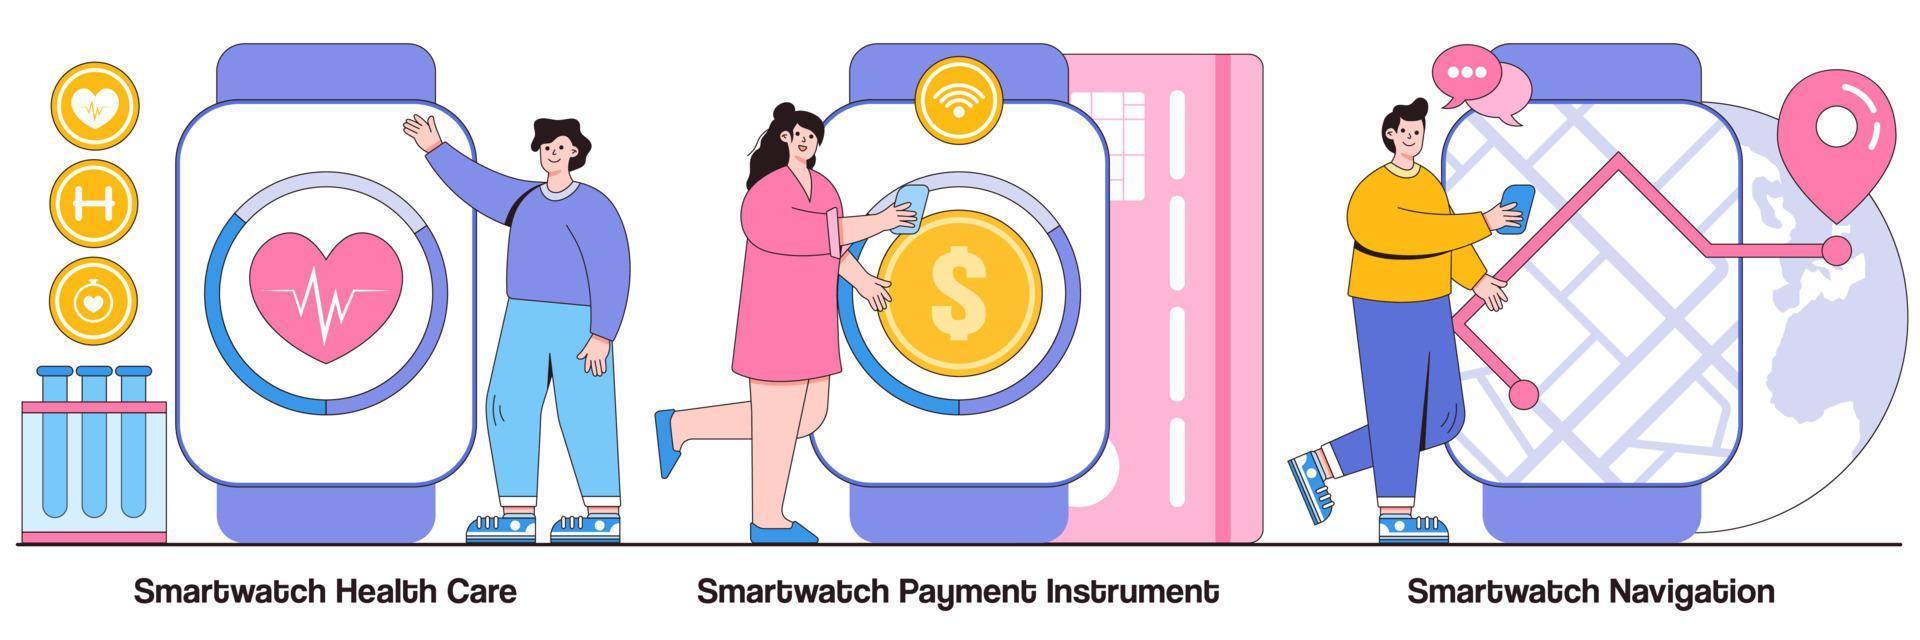 smartwatch cuidados de saúde, instrumento de pagamento e pacote ilustrado de navegação vetor